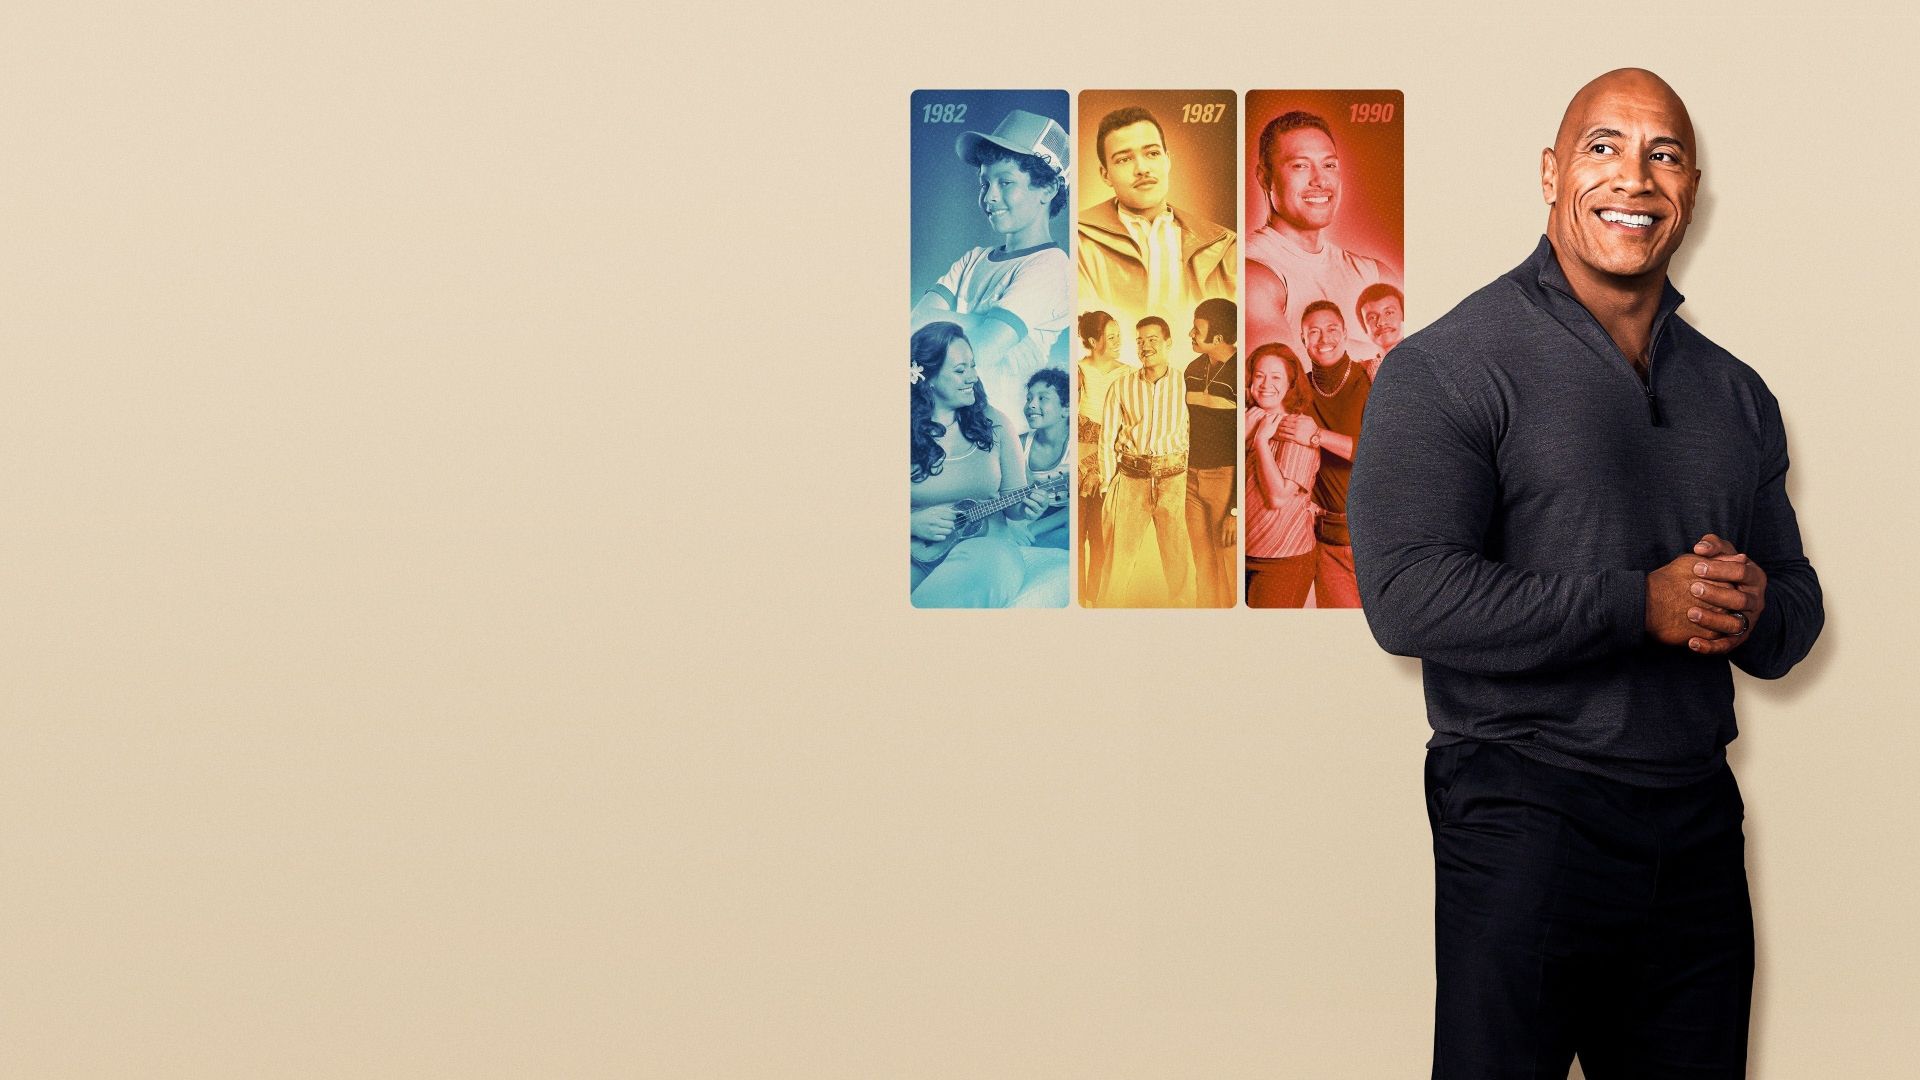 دواین جانسون ملقب به راک در پوستر فصل اول سریال Young Rock و دوره اتفاقات سریال